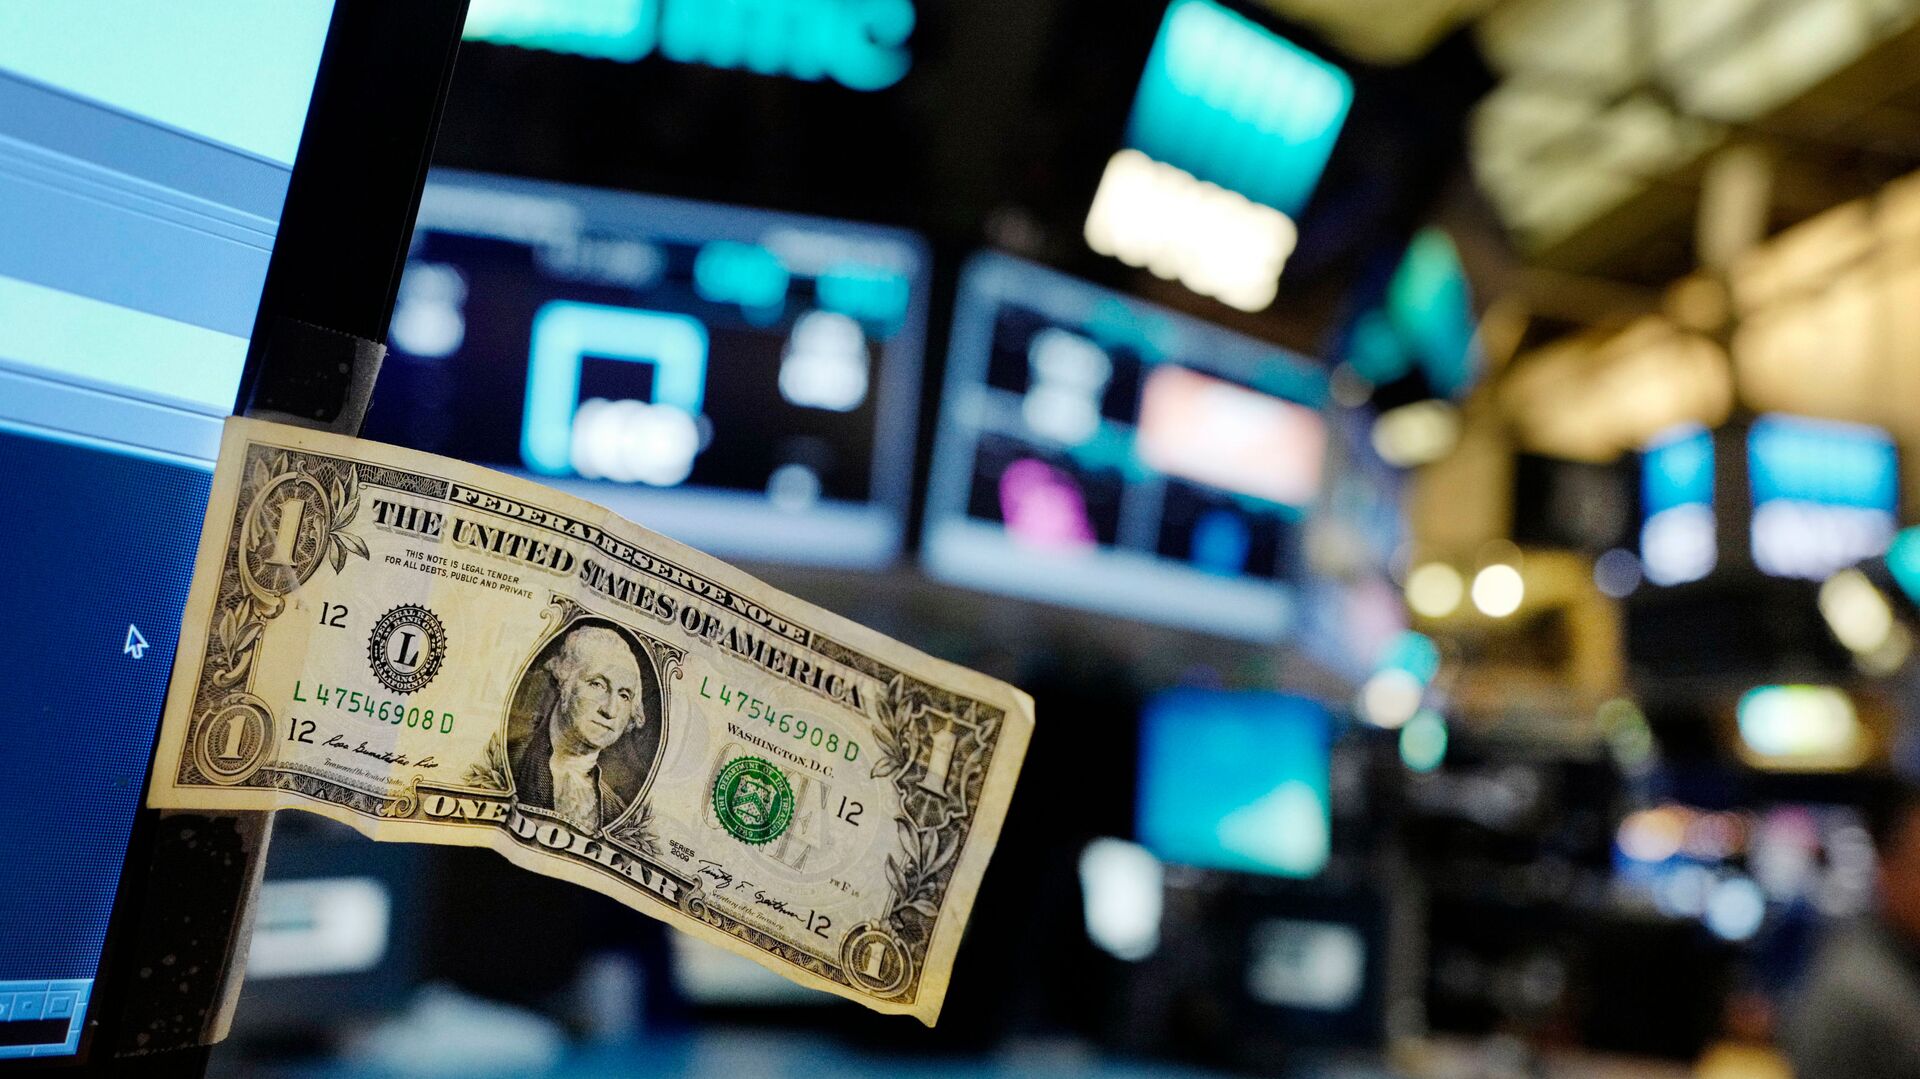 Долларовая банкнота прикреплена к экрану компьютера трейдера на Нью-Йоркской фондовой бирже - РИА Новости, 1920, 21.06.2021